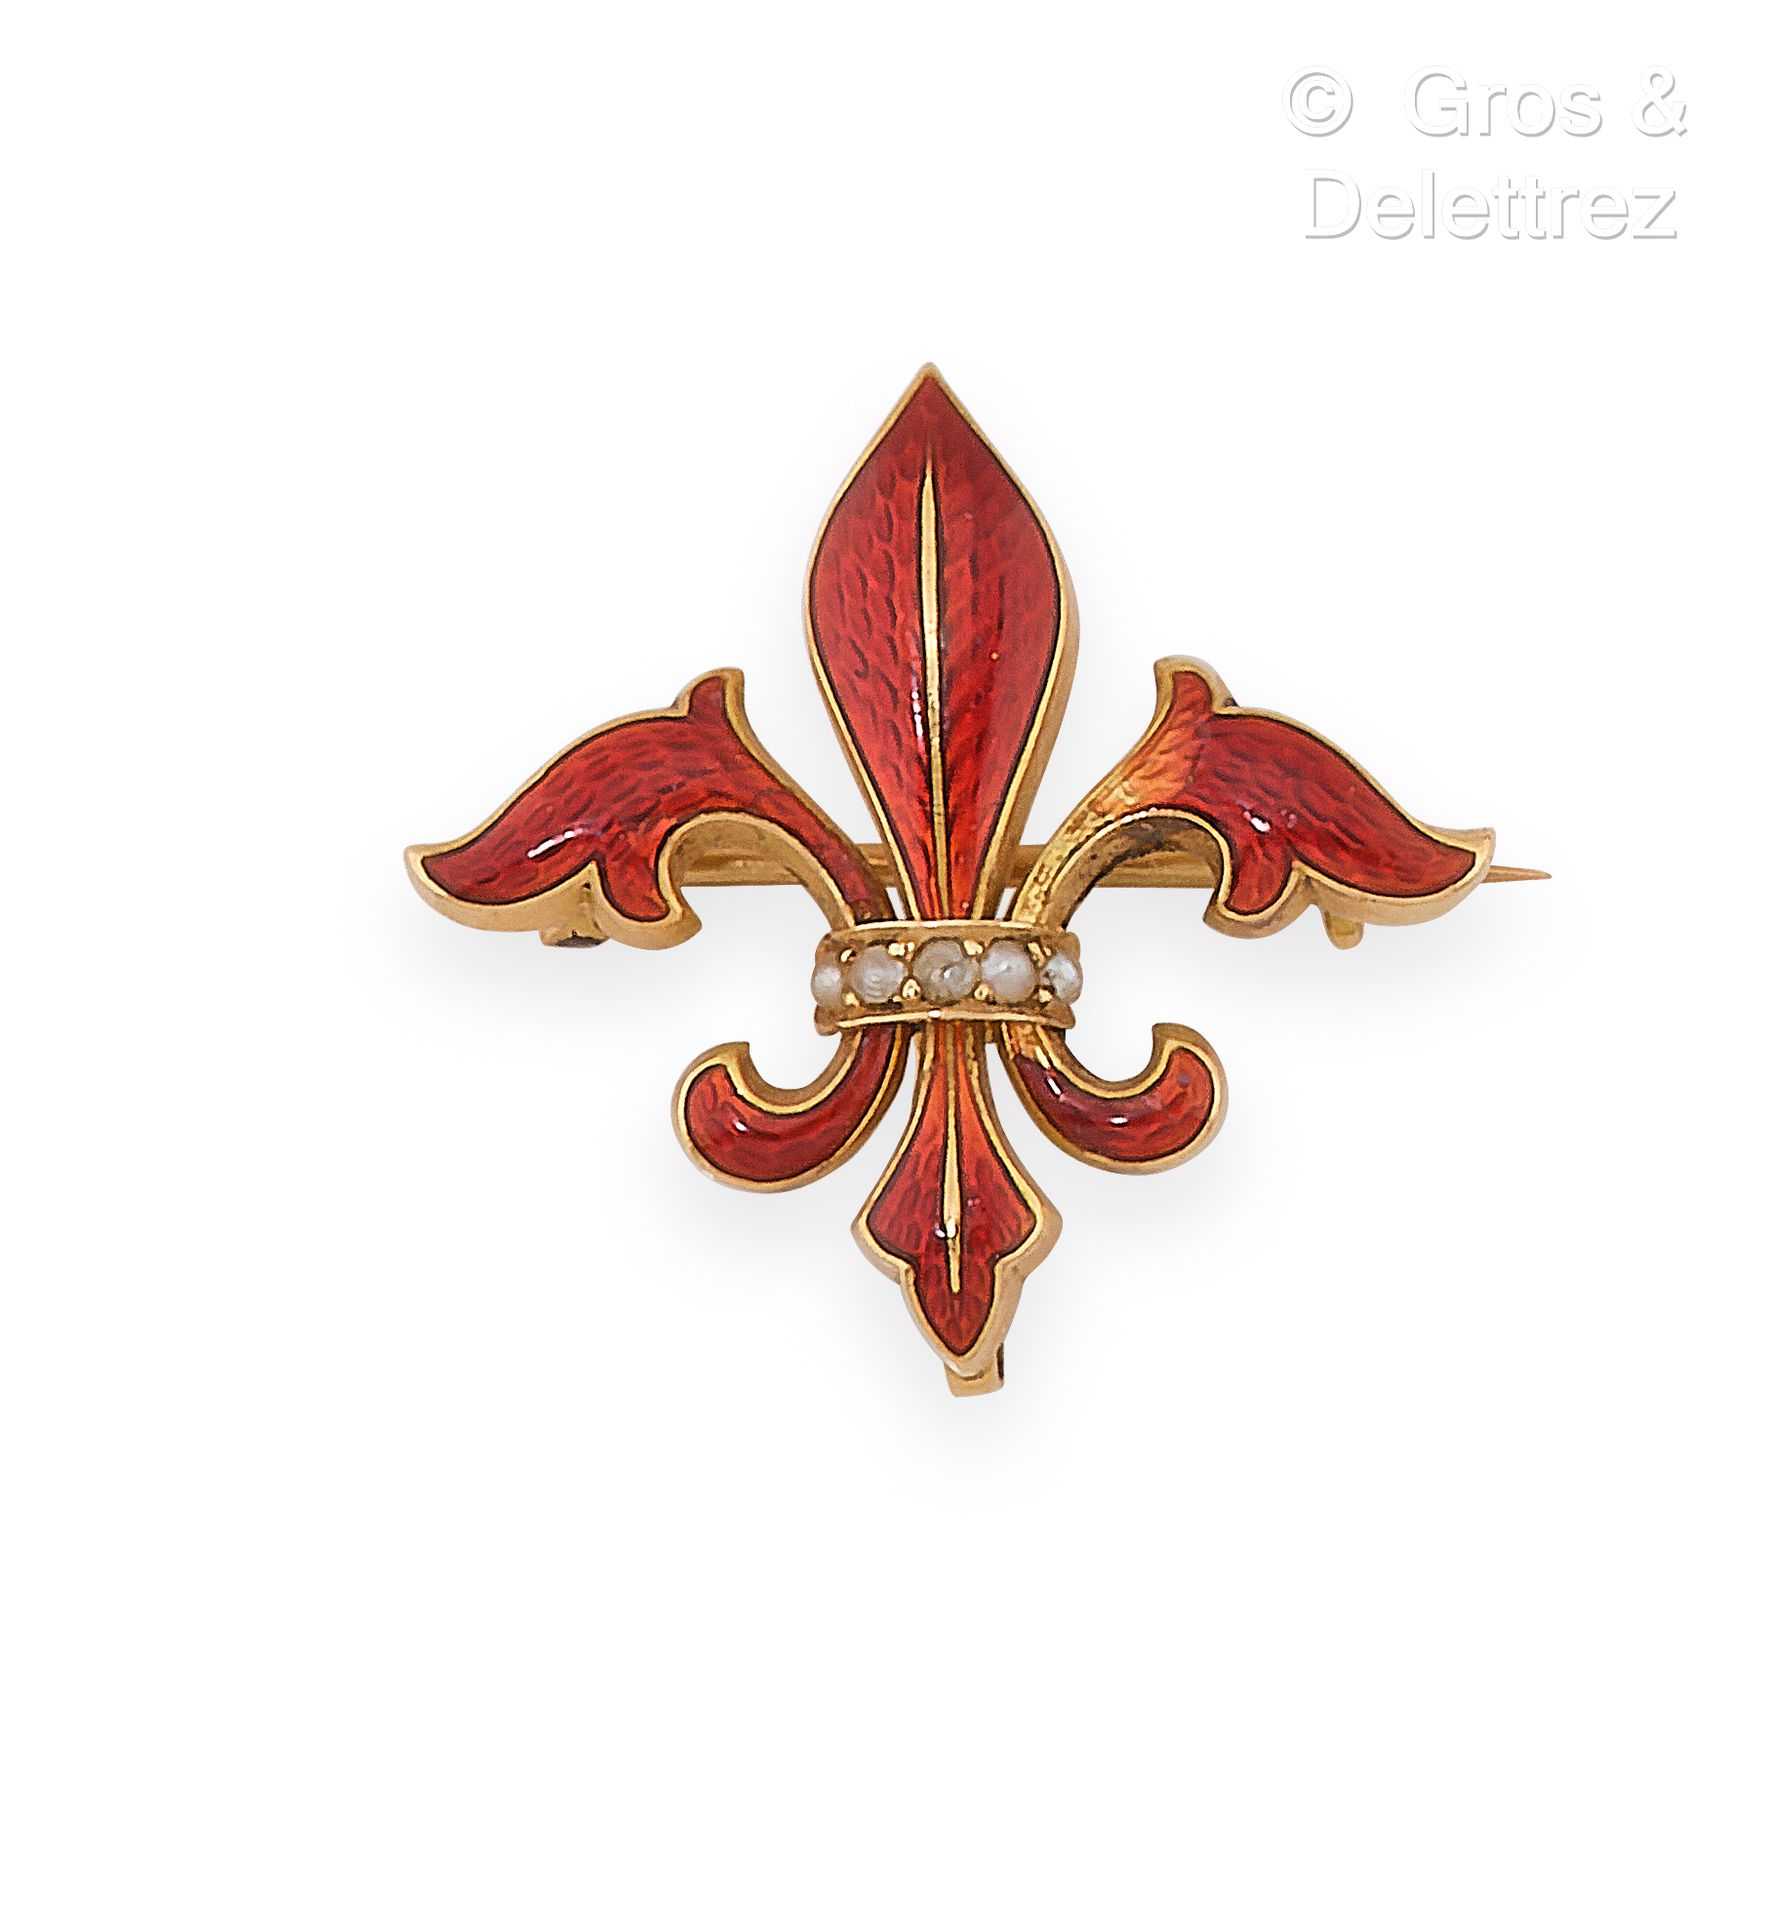 Null 黄金 "Fleur de lys "胸针，背景是红色珐琅的扭索纹（缺失），由镶嵌有精美珍珠的扣子固定。尺寸：2.5 x 2.5厘米。毛重：3克。